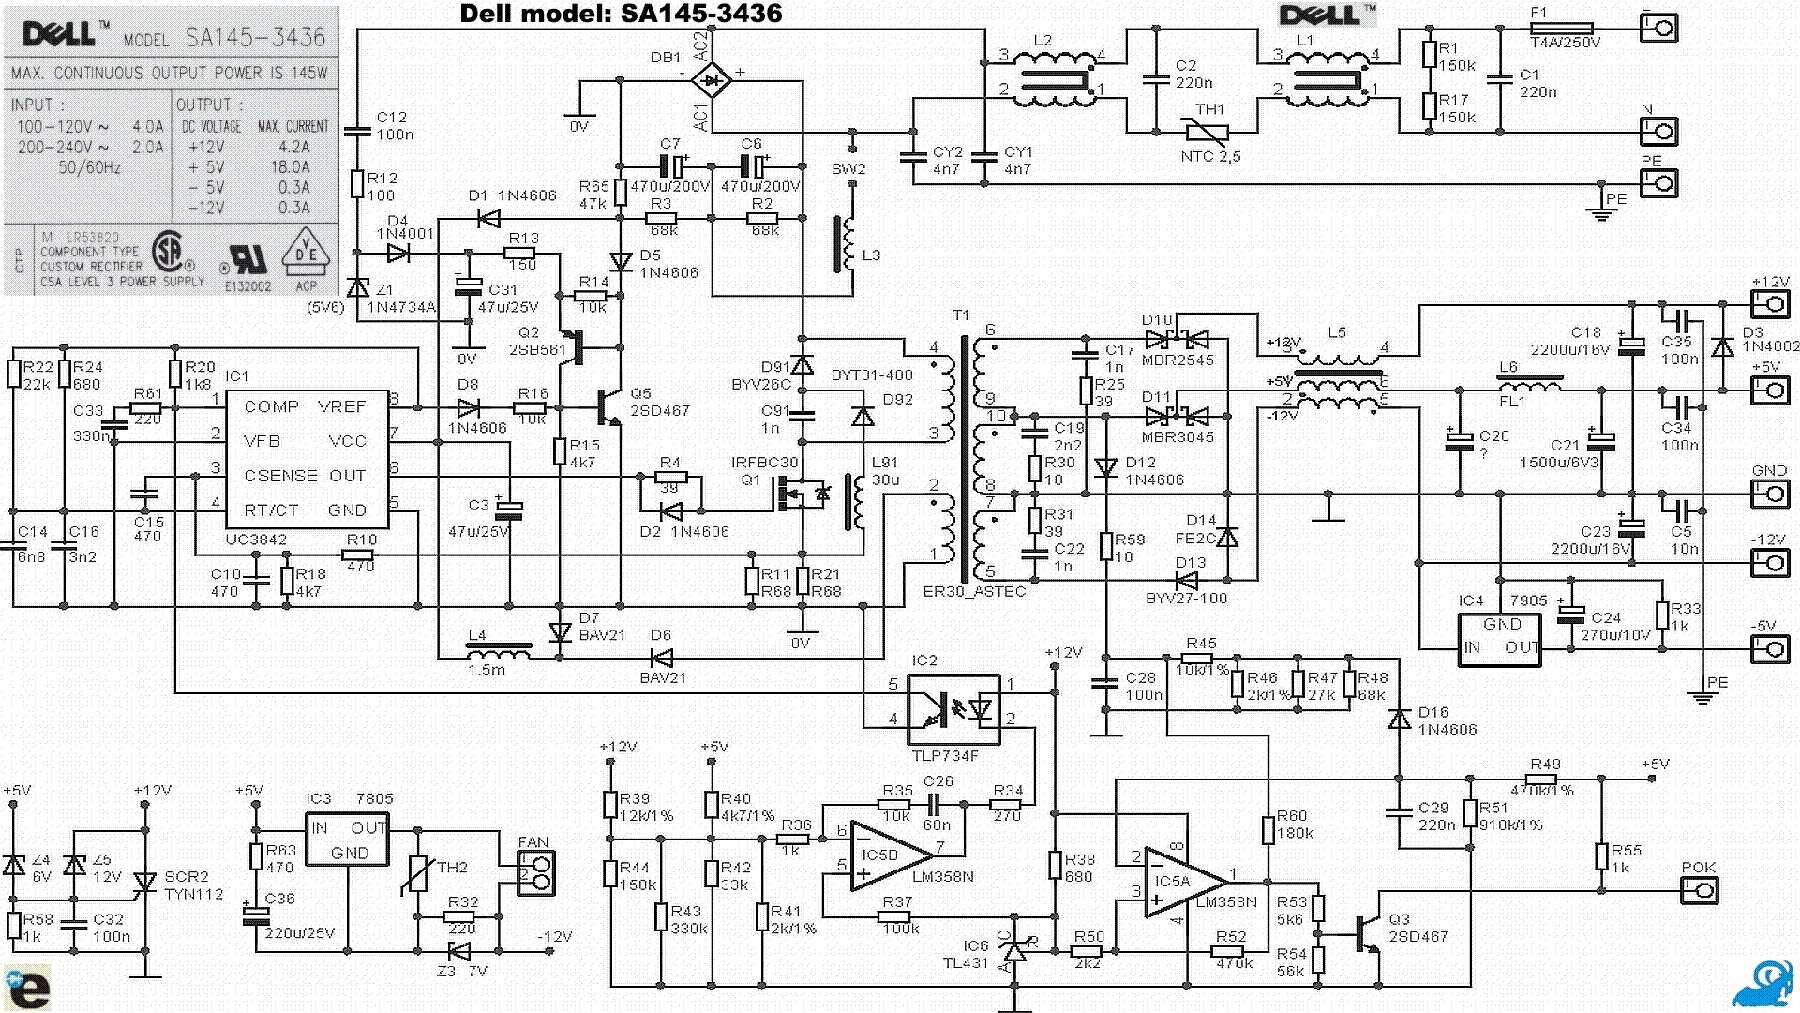 Power Supply: Power Supply Schematic